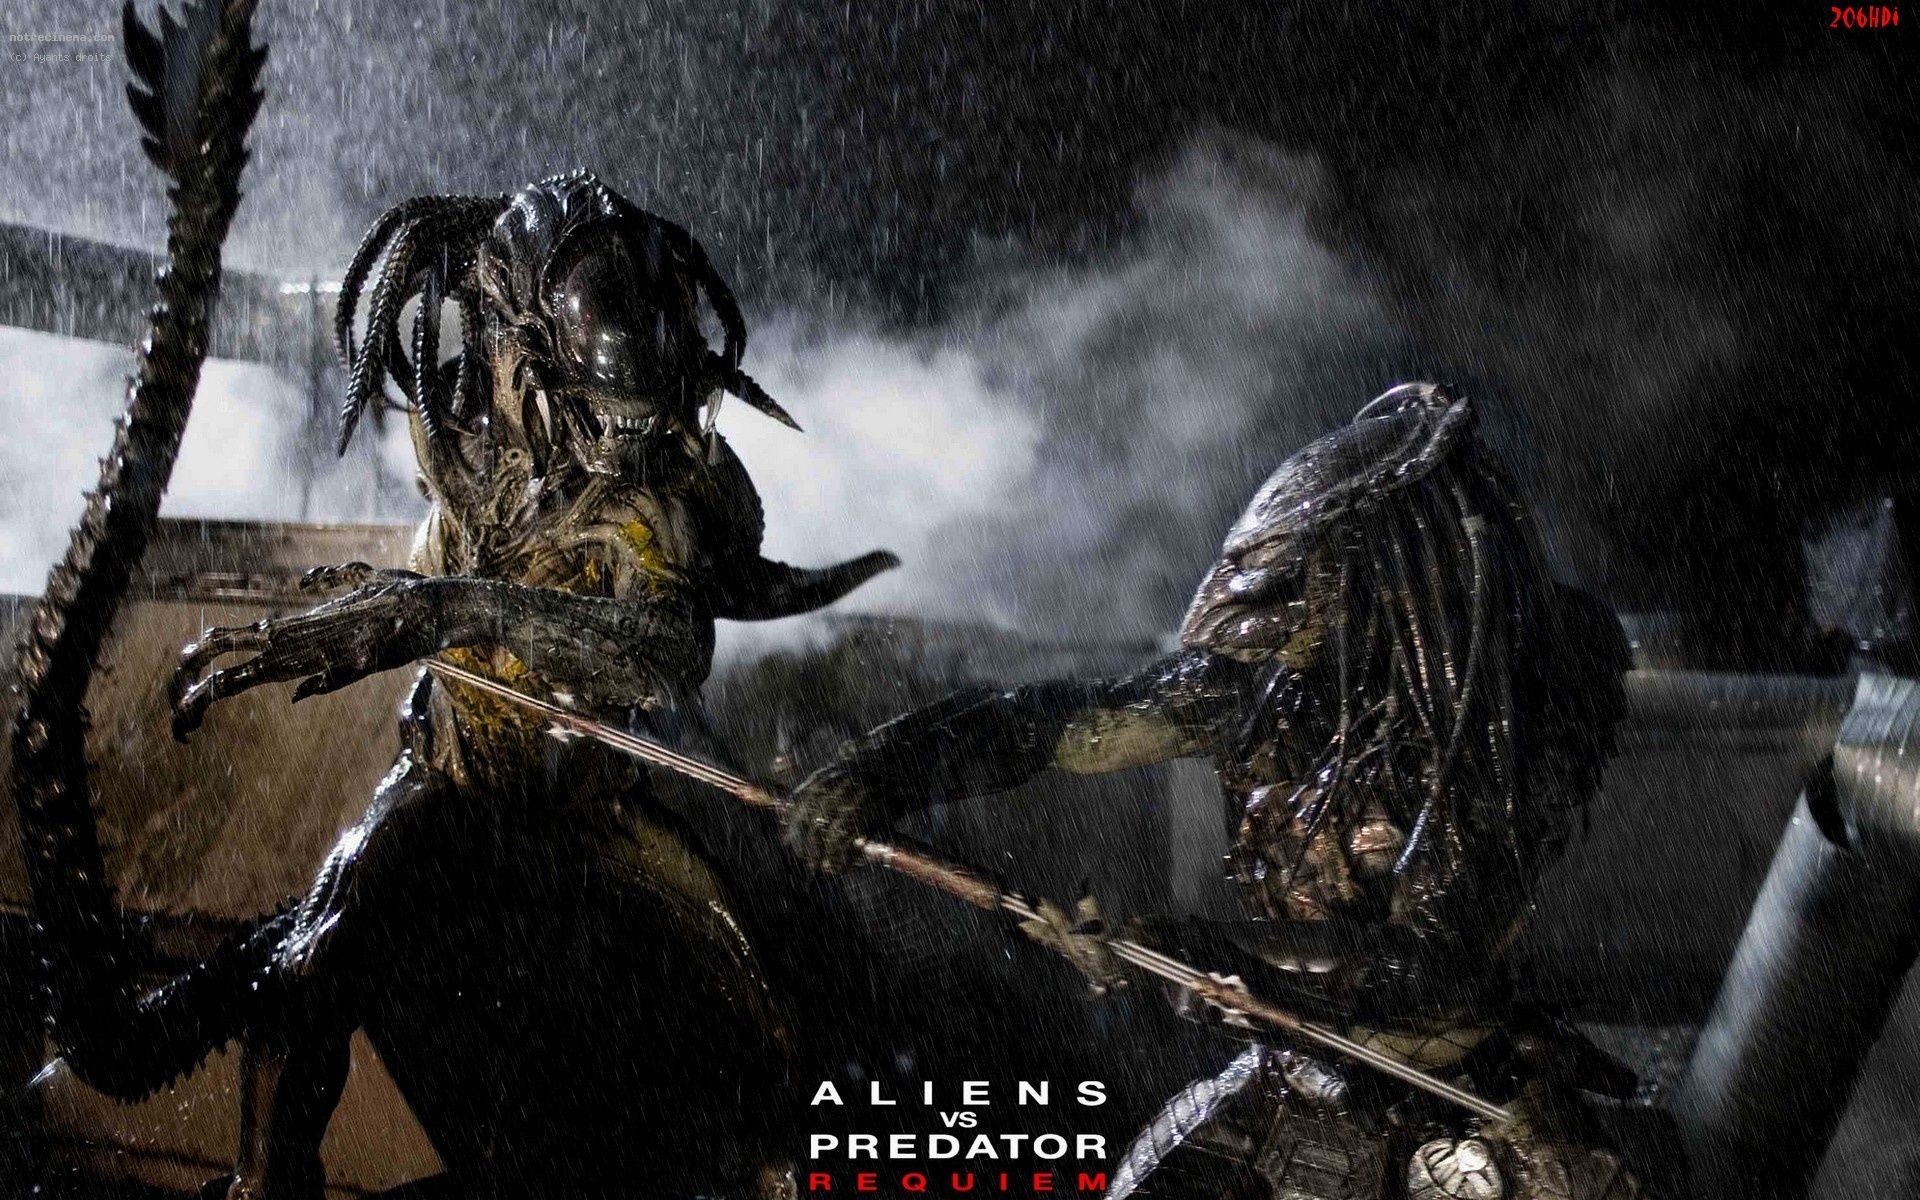 Wallpaper of Alien vs Predator in high definition - AVP on Earth